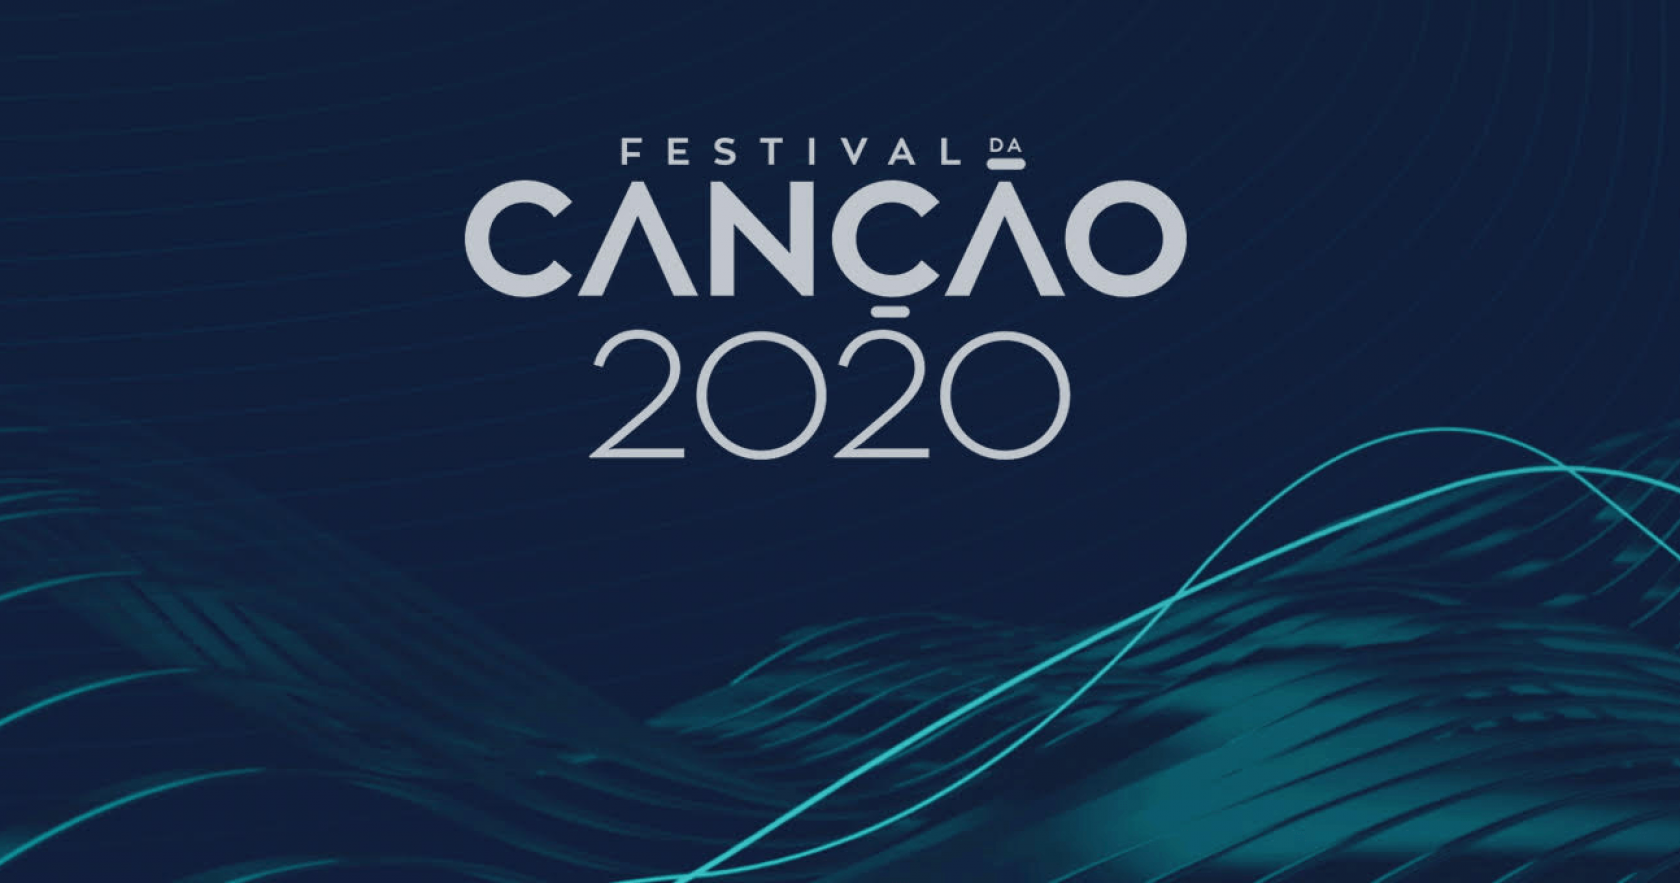 Festival Da Cancao 2020 Festival Da Canção 2020. Oiça Aqui Todas As Canções